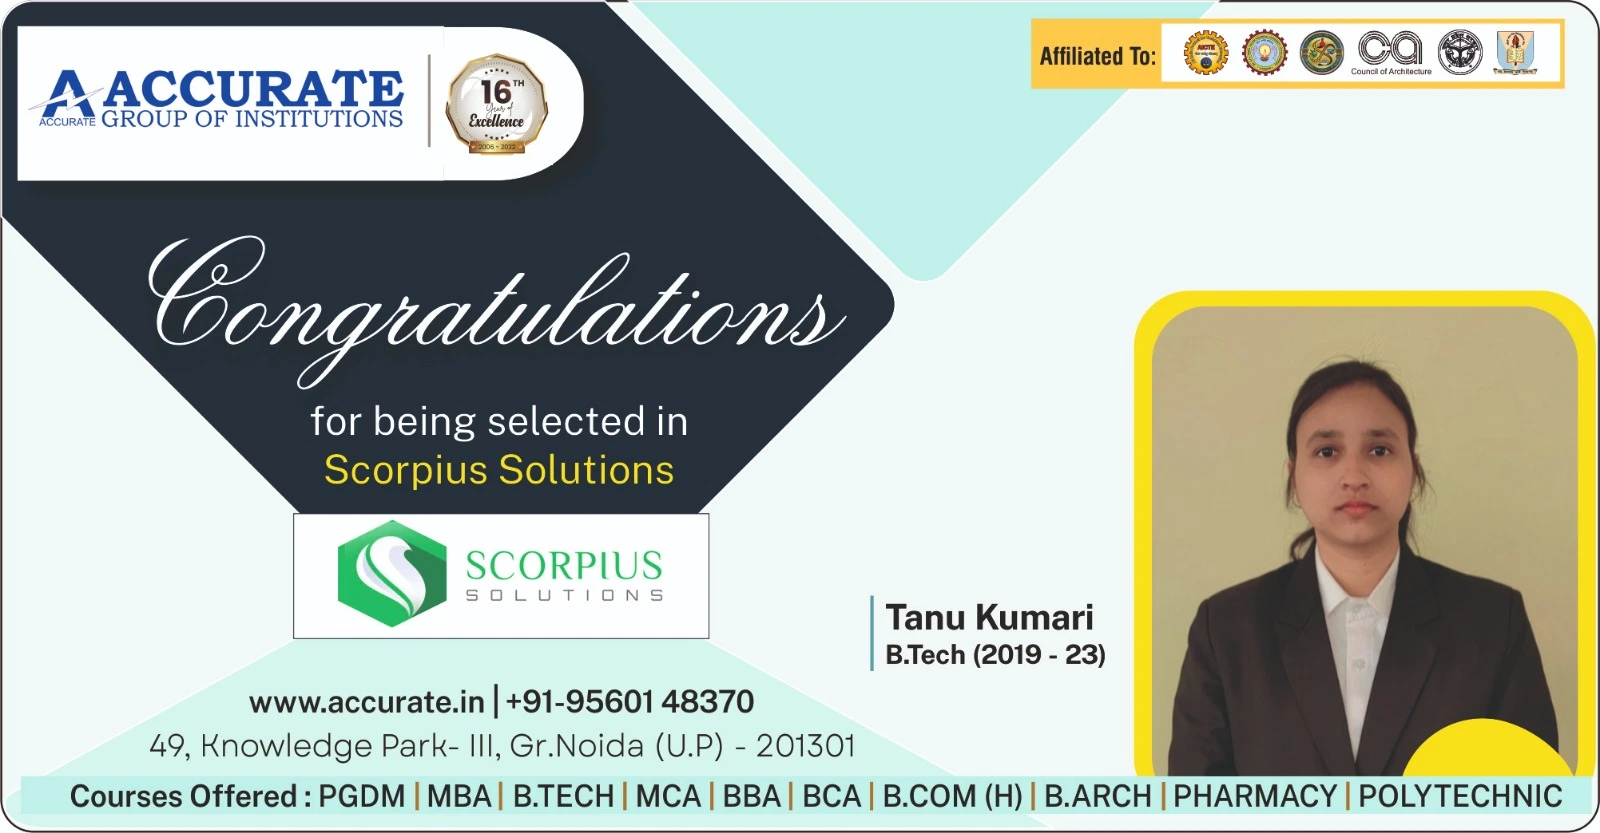 Recent Placement - Tanu Kumari, B.Tech Batch 2019-2023, Selected at Scorpius Solutions